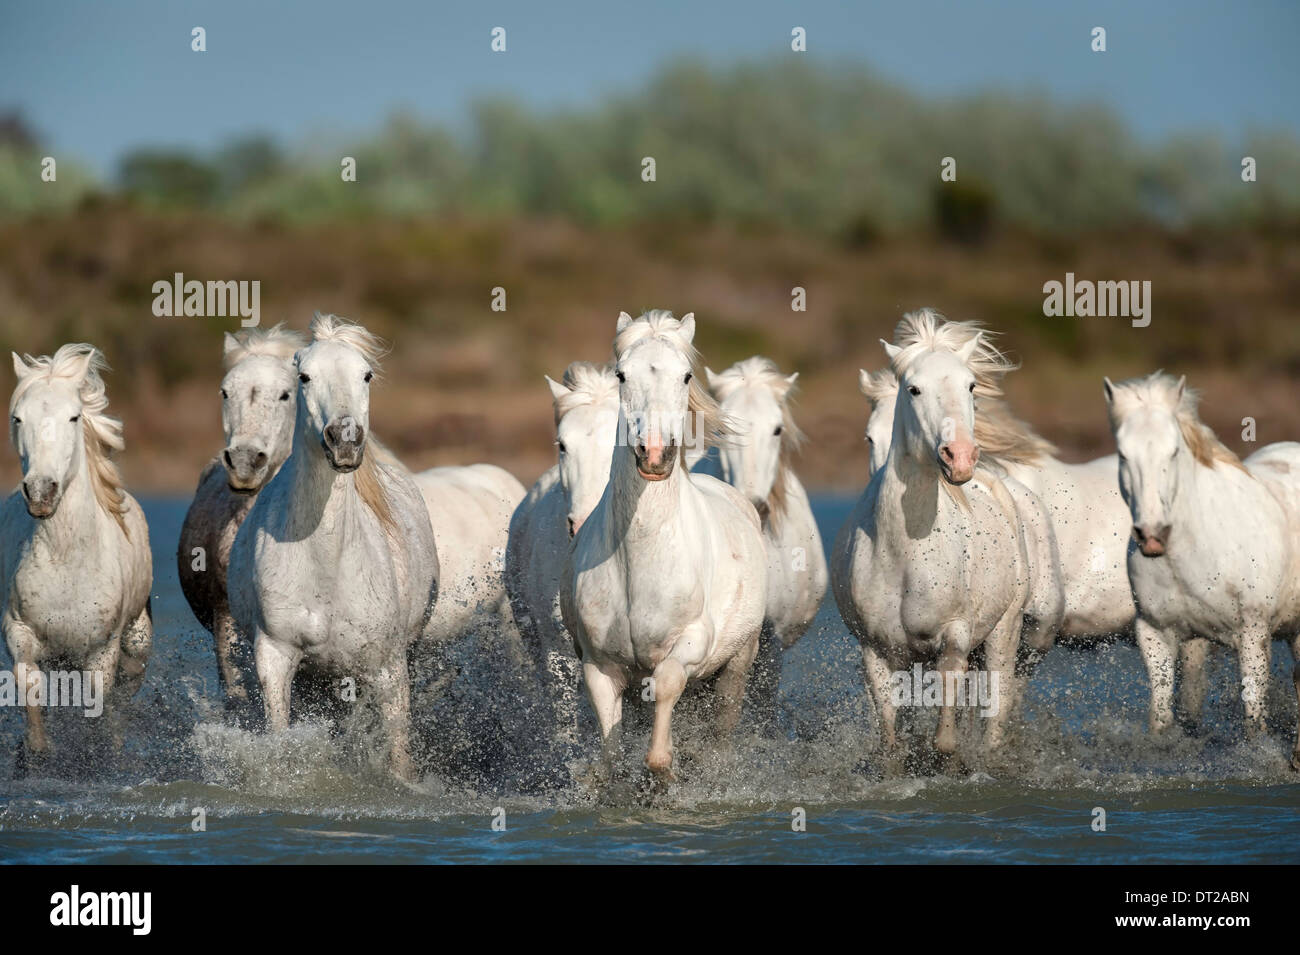 Herd of white horses running towards camera through marshy water Stock Photo